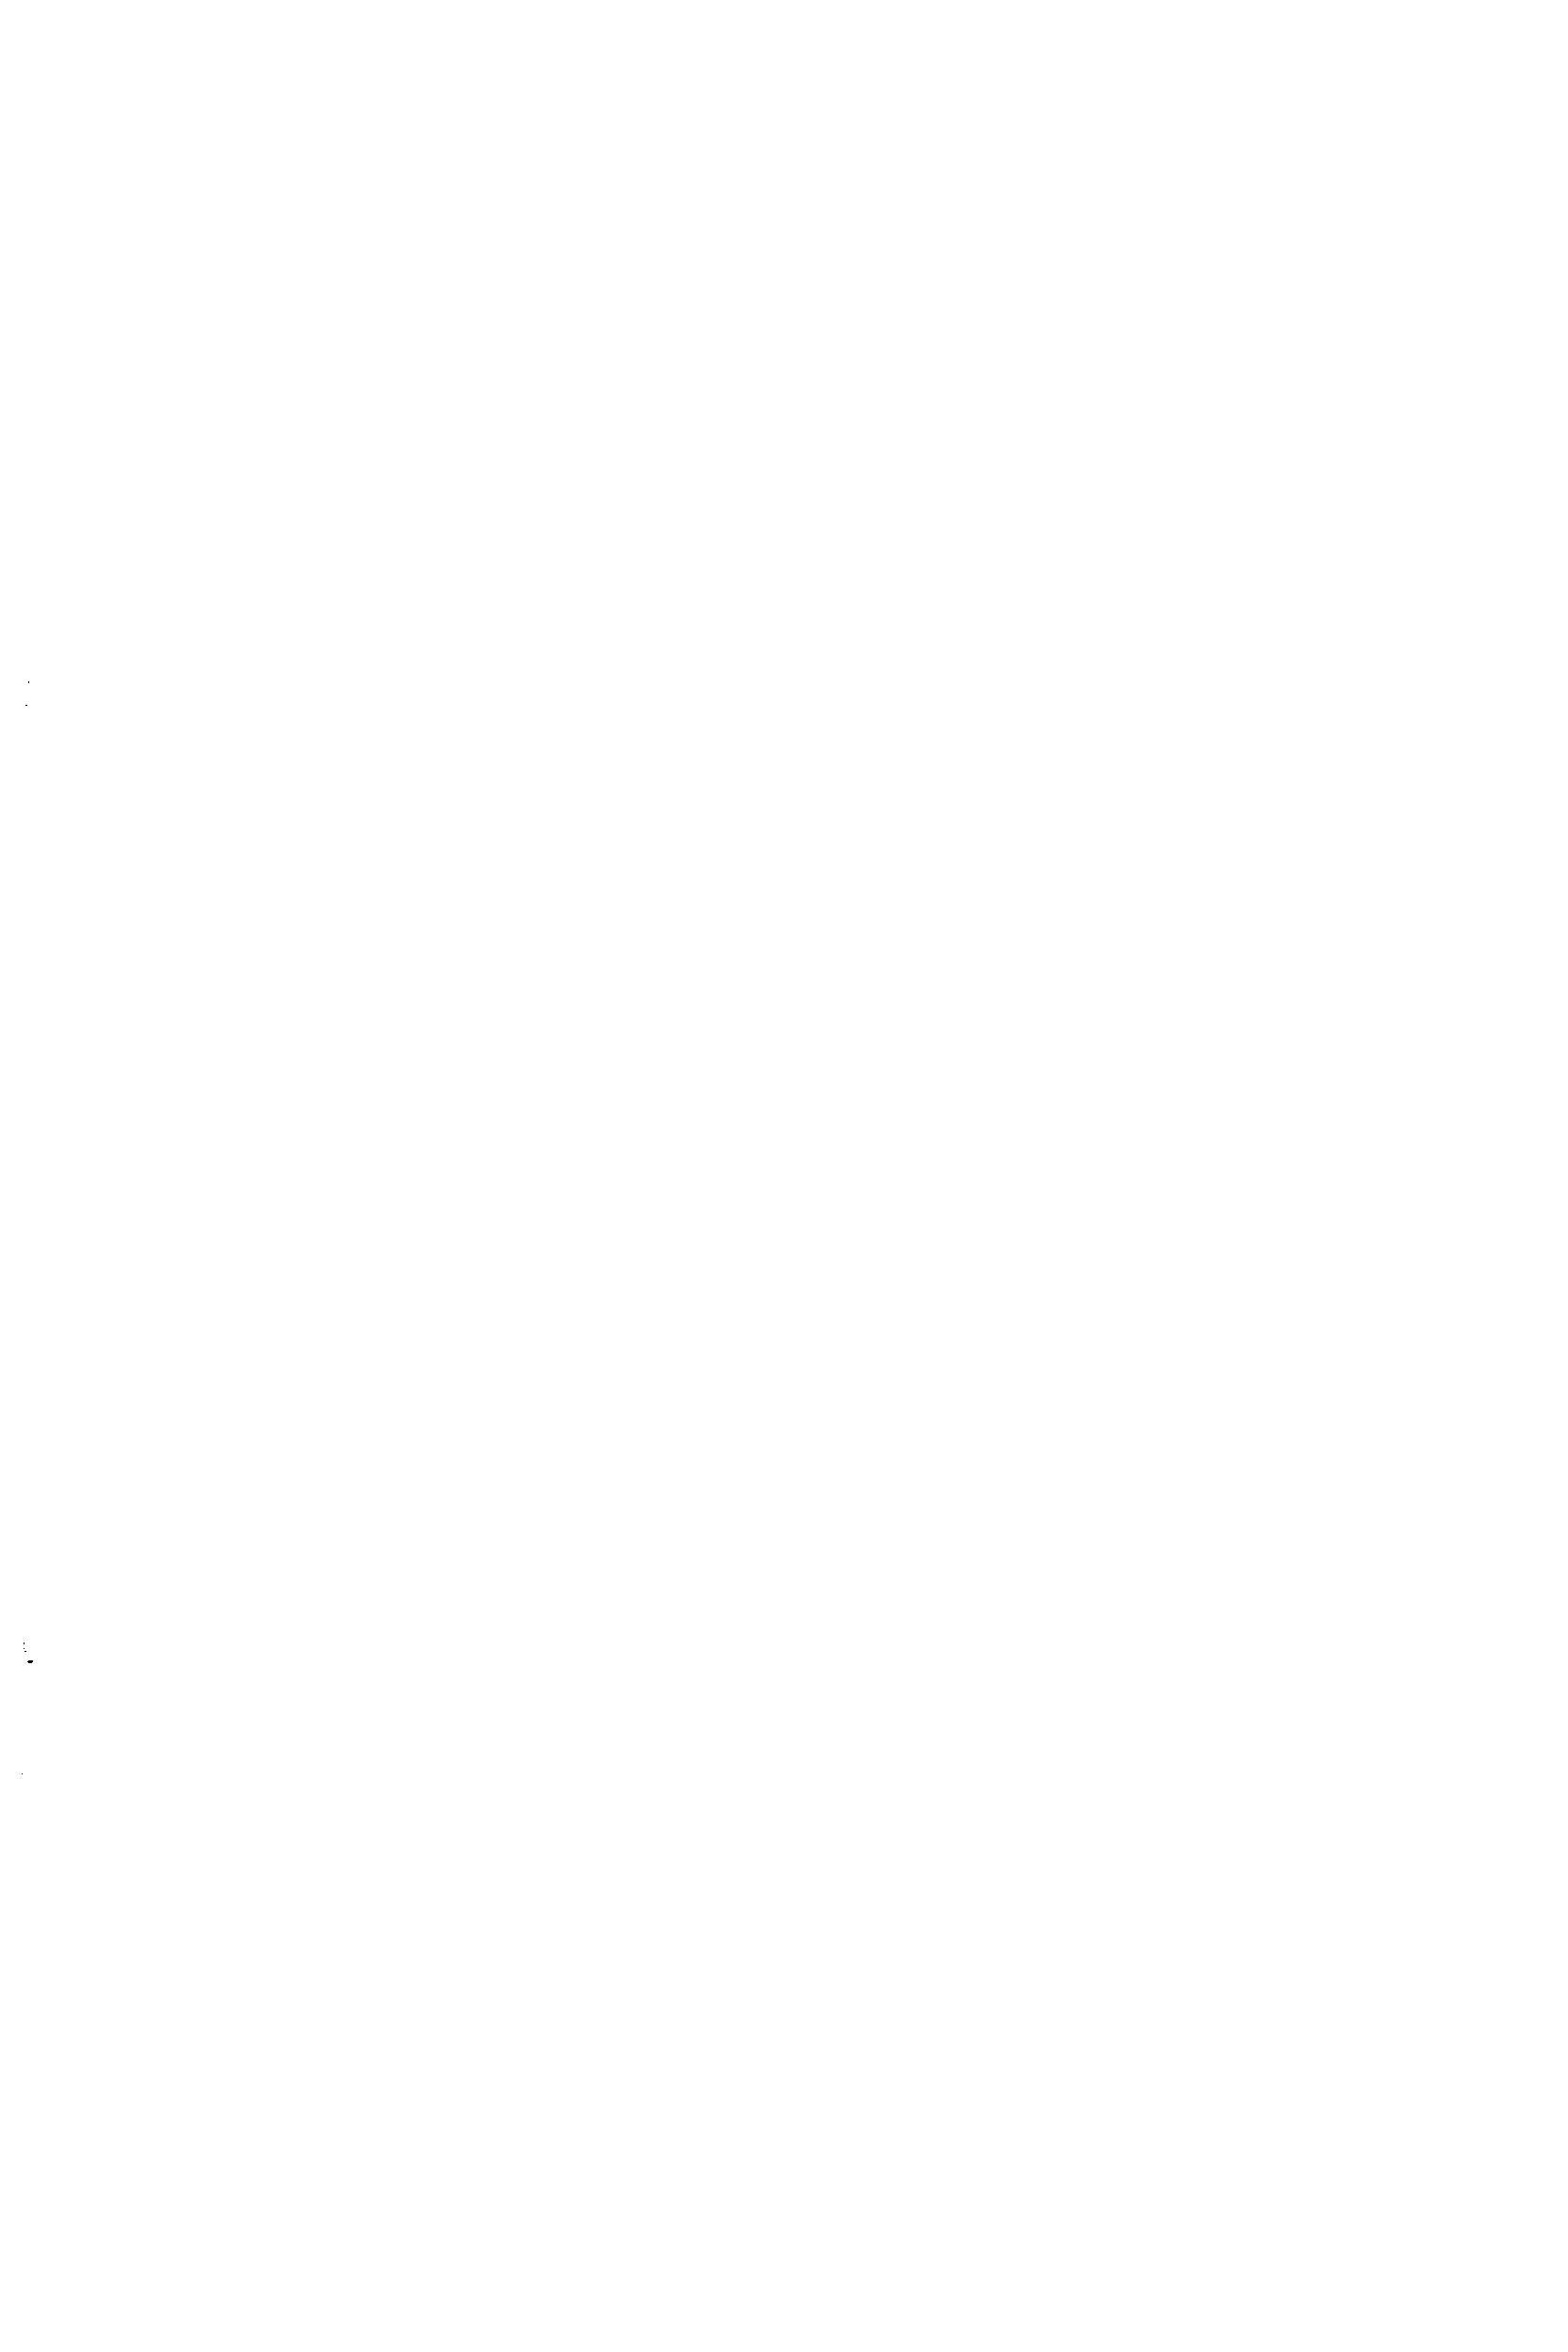 Рис. 12.6. Конструкции <a href="/info/644079">сварных соединений стальных труб</a> и их элементов а — стыковые односторонние без скоса кромок б — стыковые односторонние со скосом одной кромки в — стыковые односторонние со скосом одной кромки с остающейся или удаляемой подкладкой г — стыковые односторонние со скосом двух кромок д — стыковые односторонние с подкладкой е — стыковые односторонние внахлестку ж — двусторонние угловые з — двусторонние для соединения с плоскими фланцами и — угловые со скосом одной кромки к — угловые со скосом одной кромки л — угловые со скосом одной кромки и с подкладкой м. — соединения под углом без скоса кромок н — соединения под углом с подкладкой
